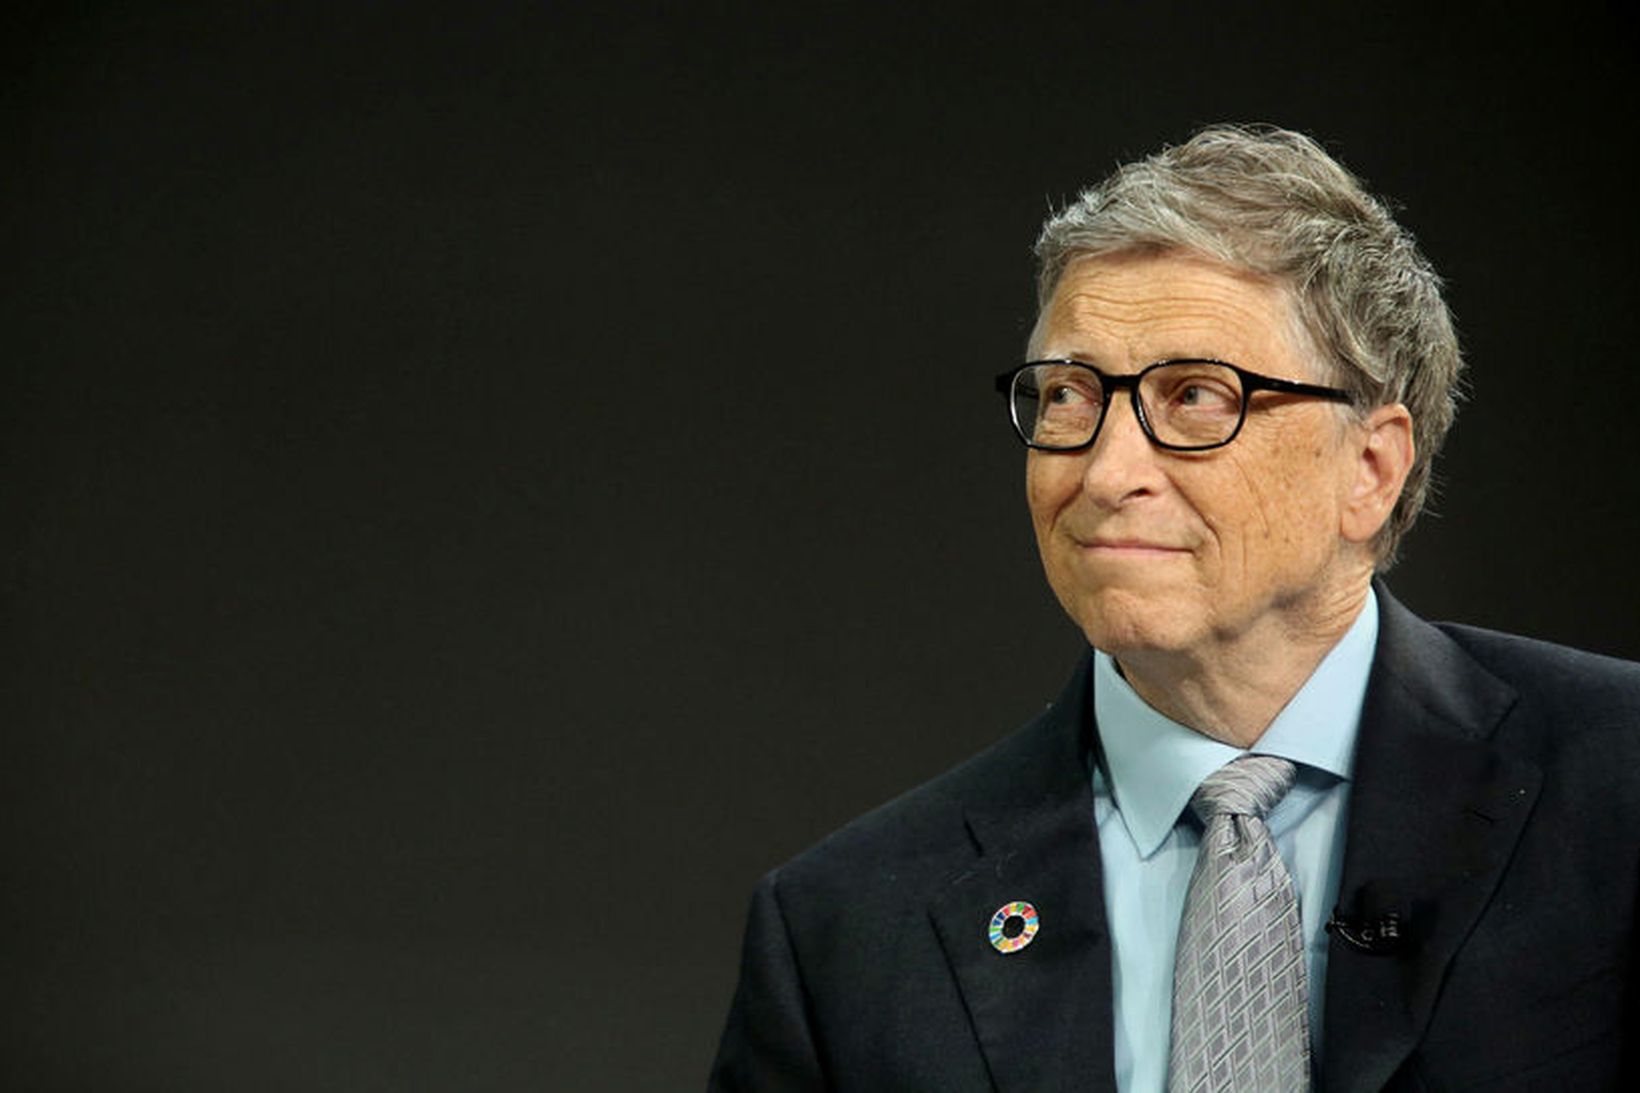 Bill Gates var látinn stunda íþróttir þegar hann var ungur, …